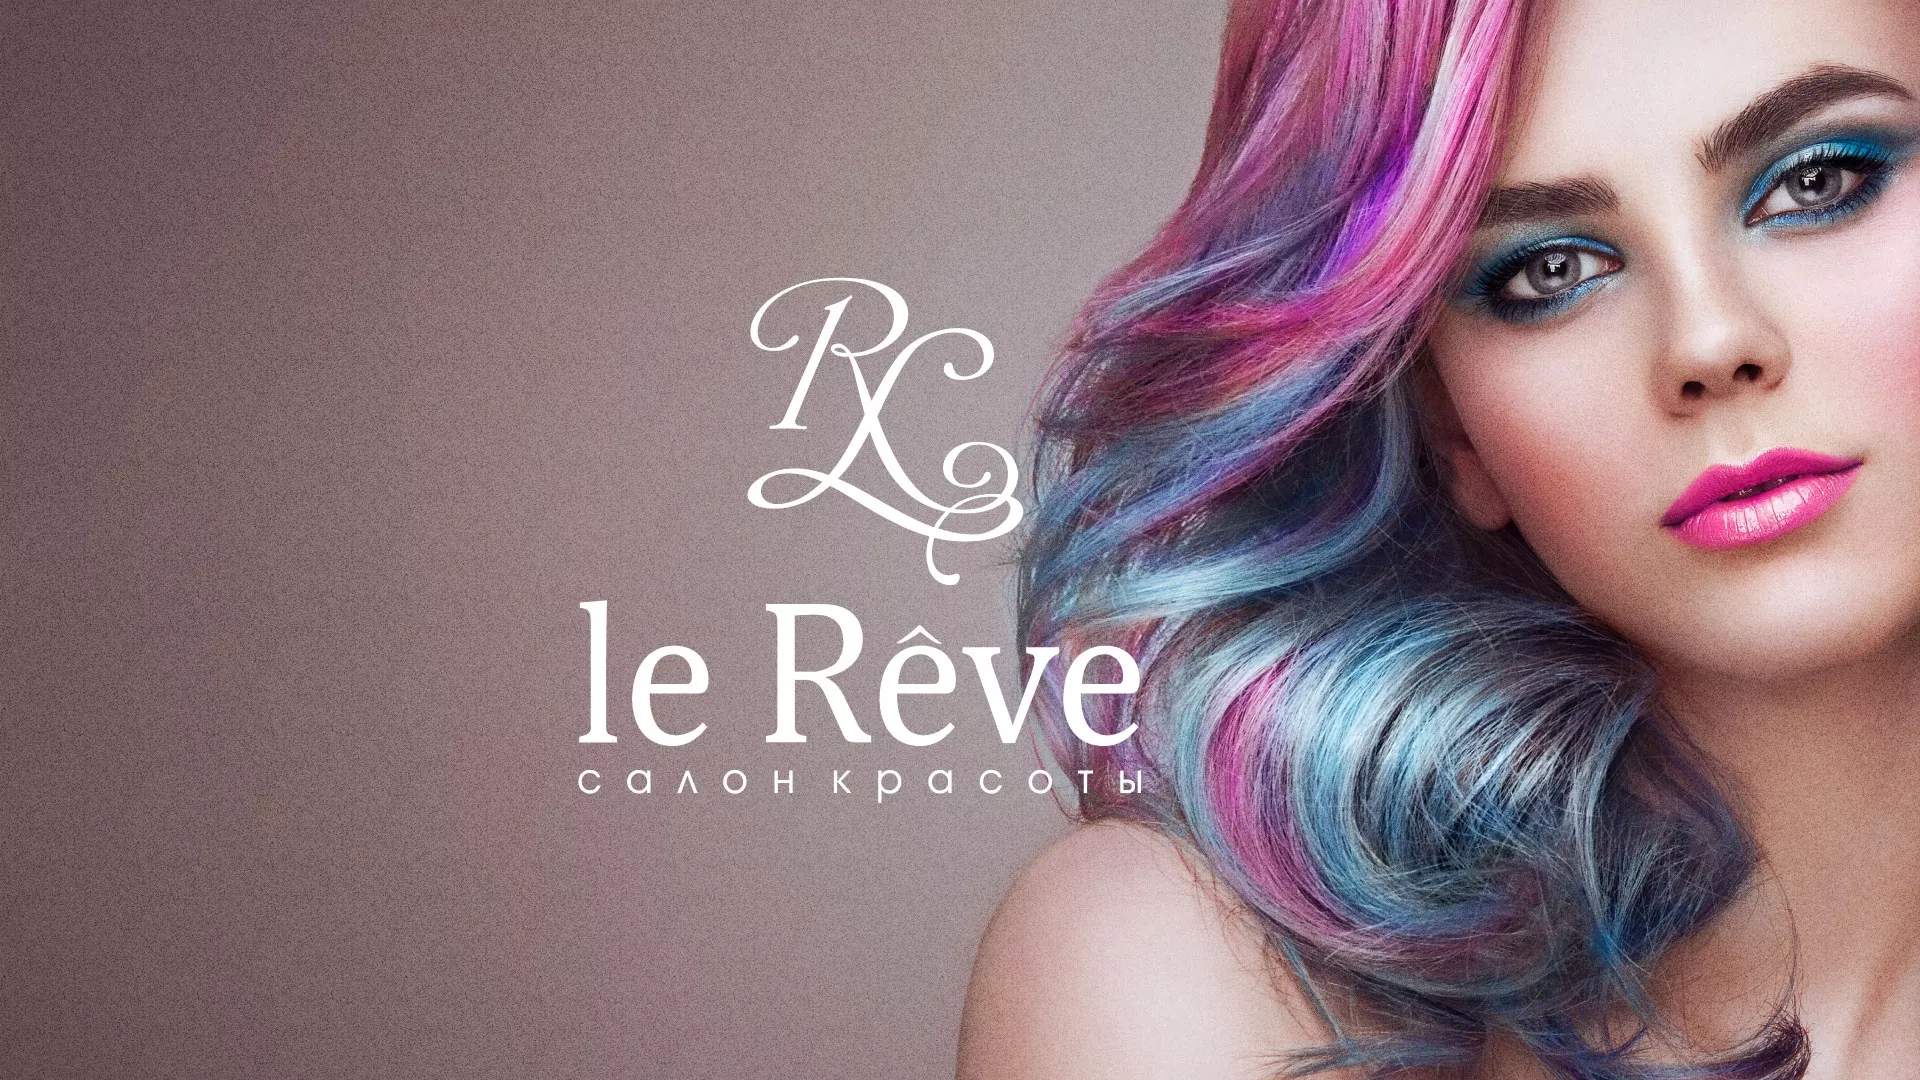 Создание сайта для салона красоты «Le Reve» в Чайковском